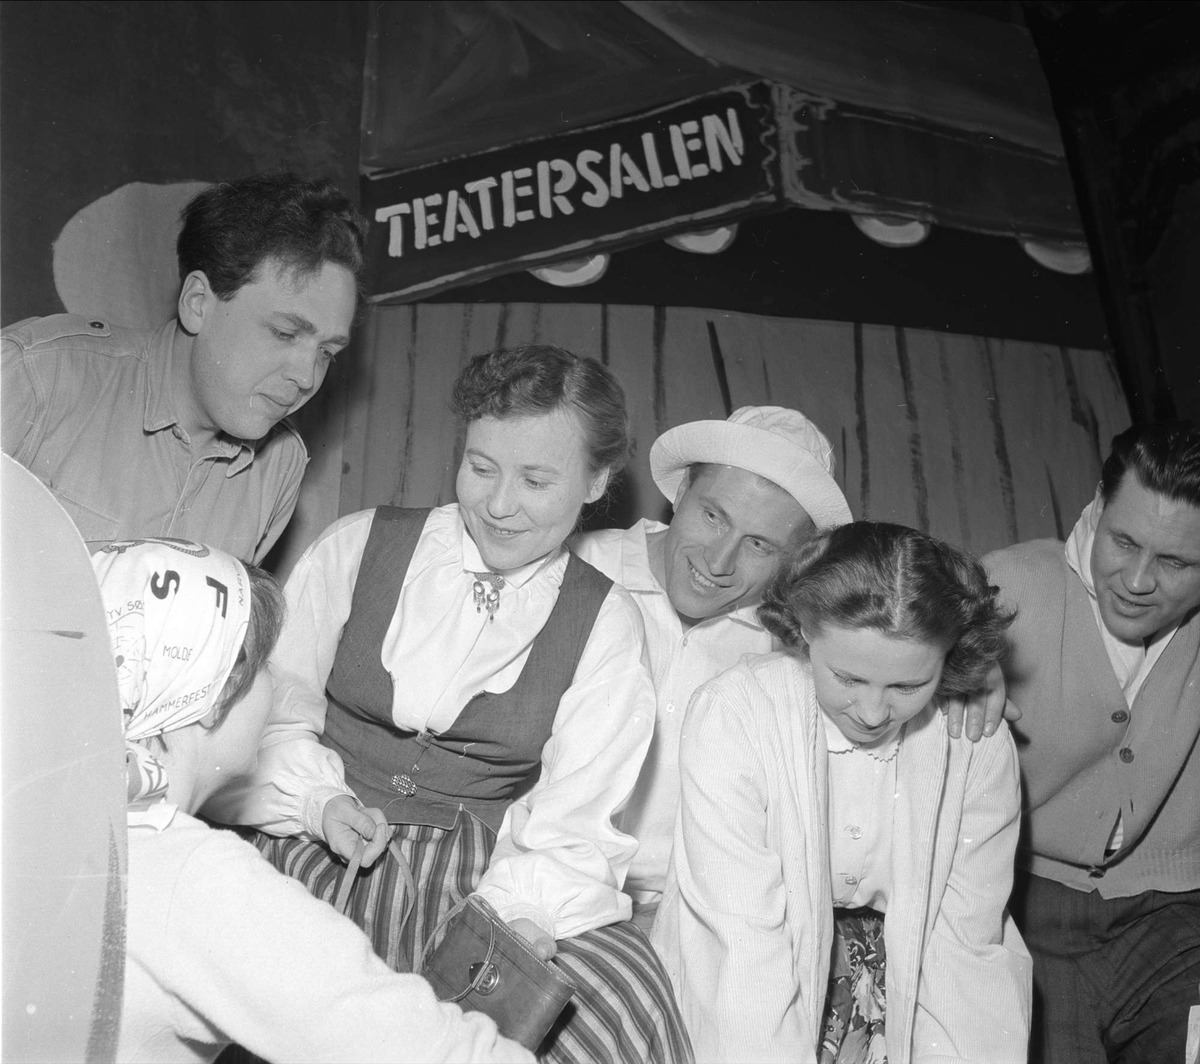 Gruppebilde. Mars 1954. Bygdelag. Teatersalen, ant. fra stykket "Rundreise".